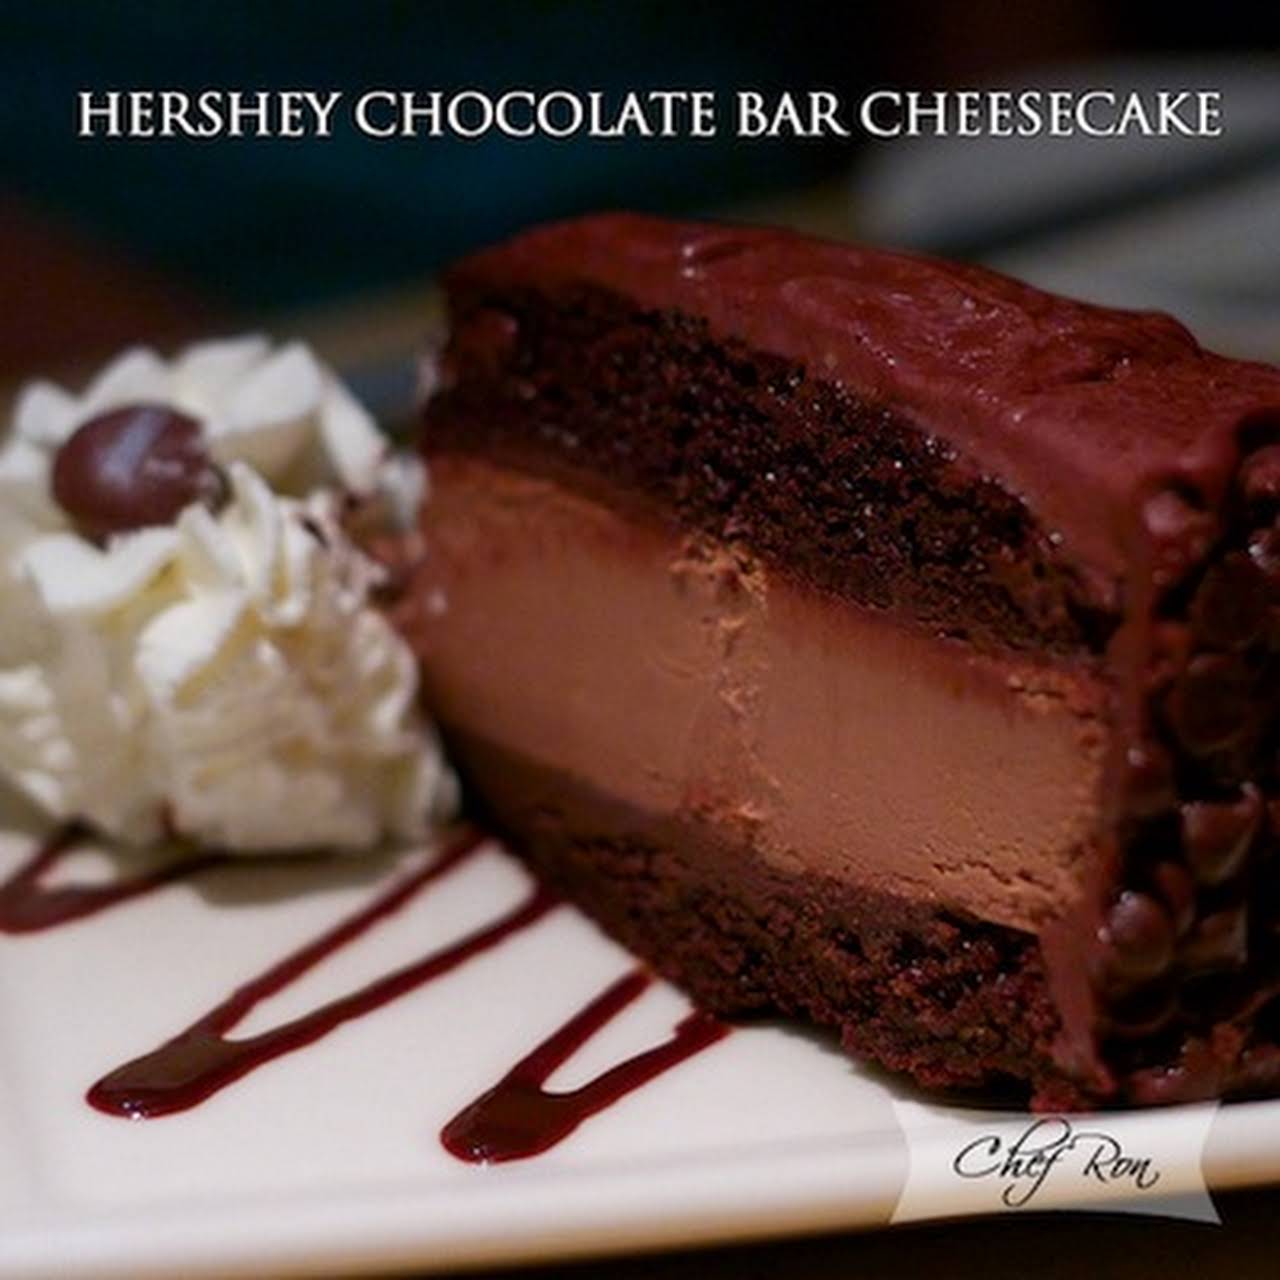 HERSHEY CHOCOLATE BAR CHEESECAKE